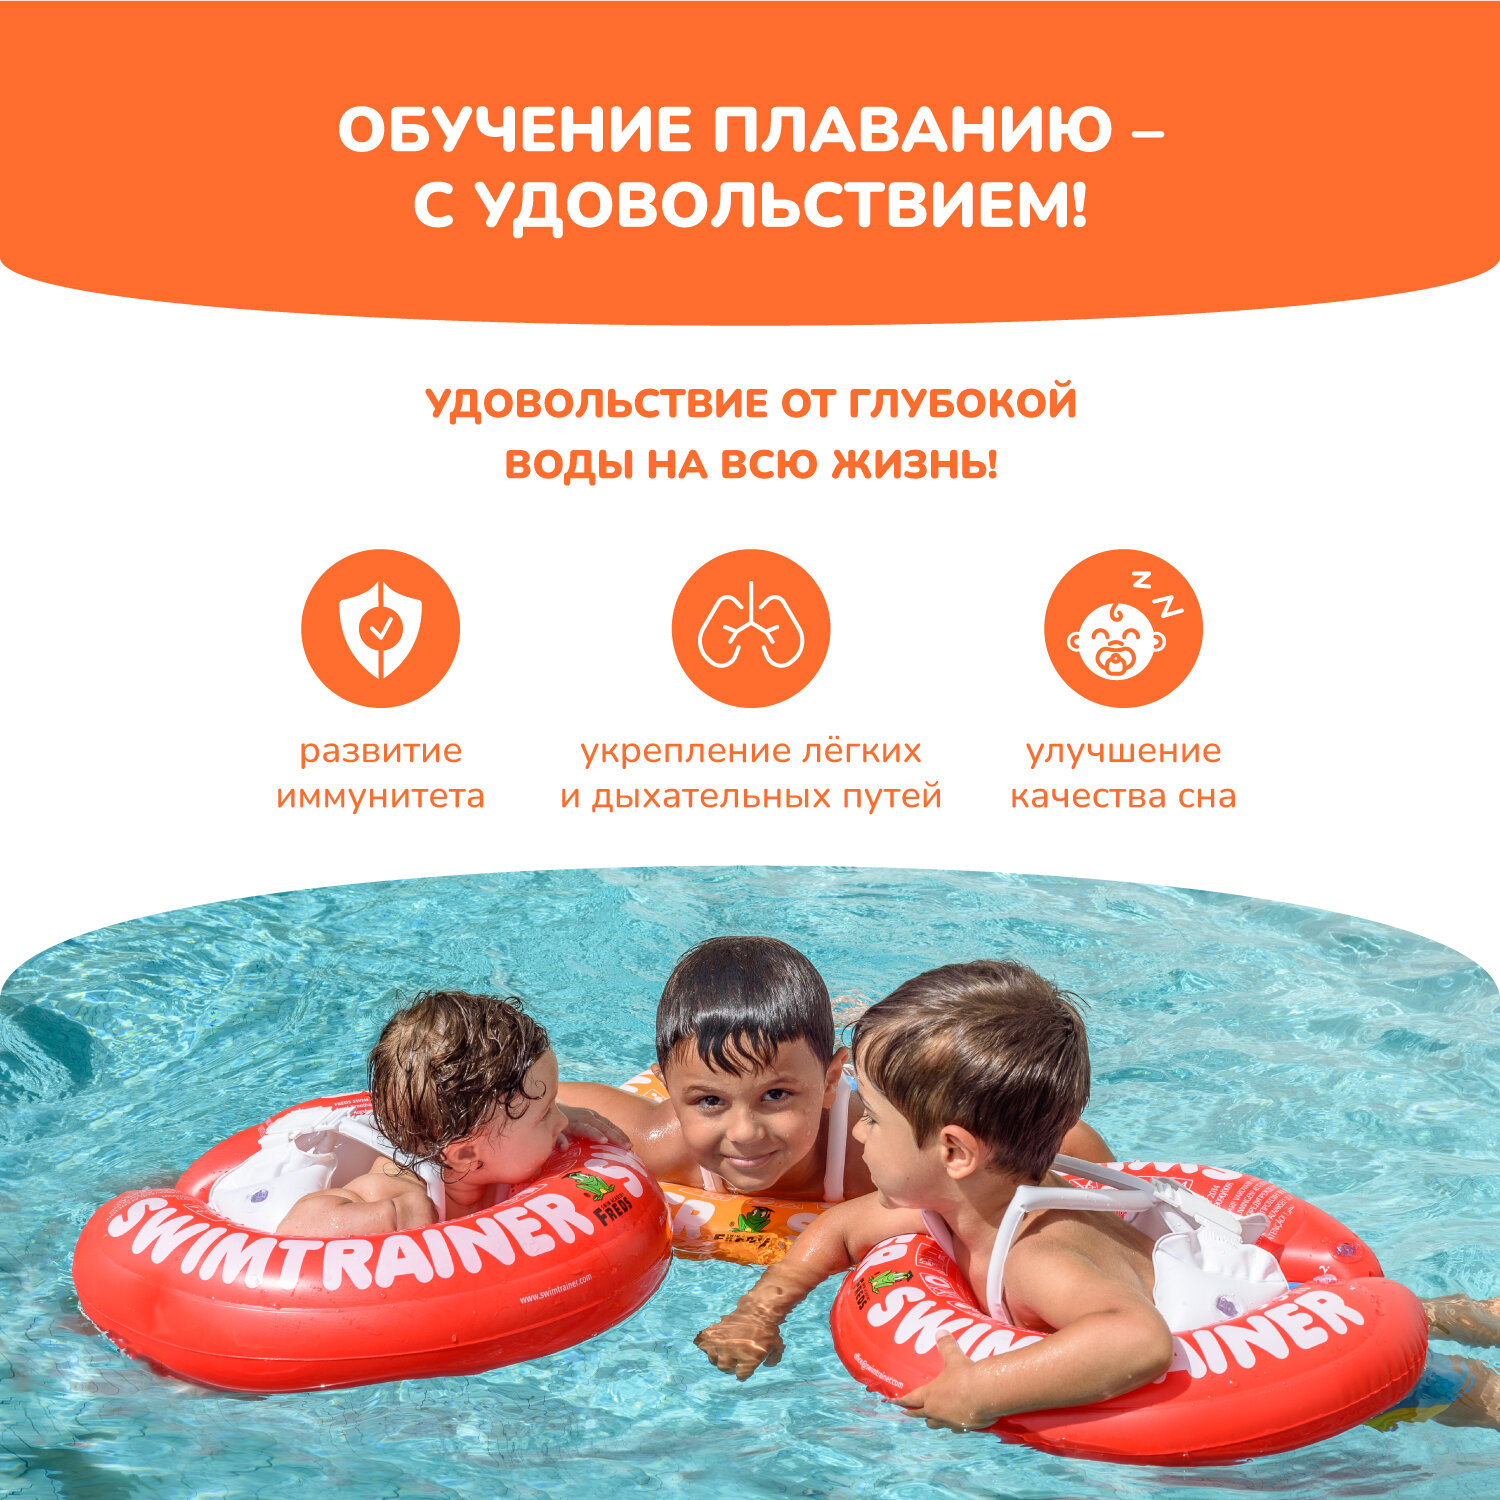 Надувной круг SWIMTRAINER «Classic» оранжевый для обучения плаванию (2-6 лет)